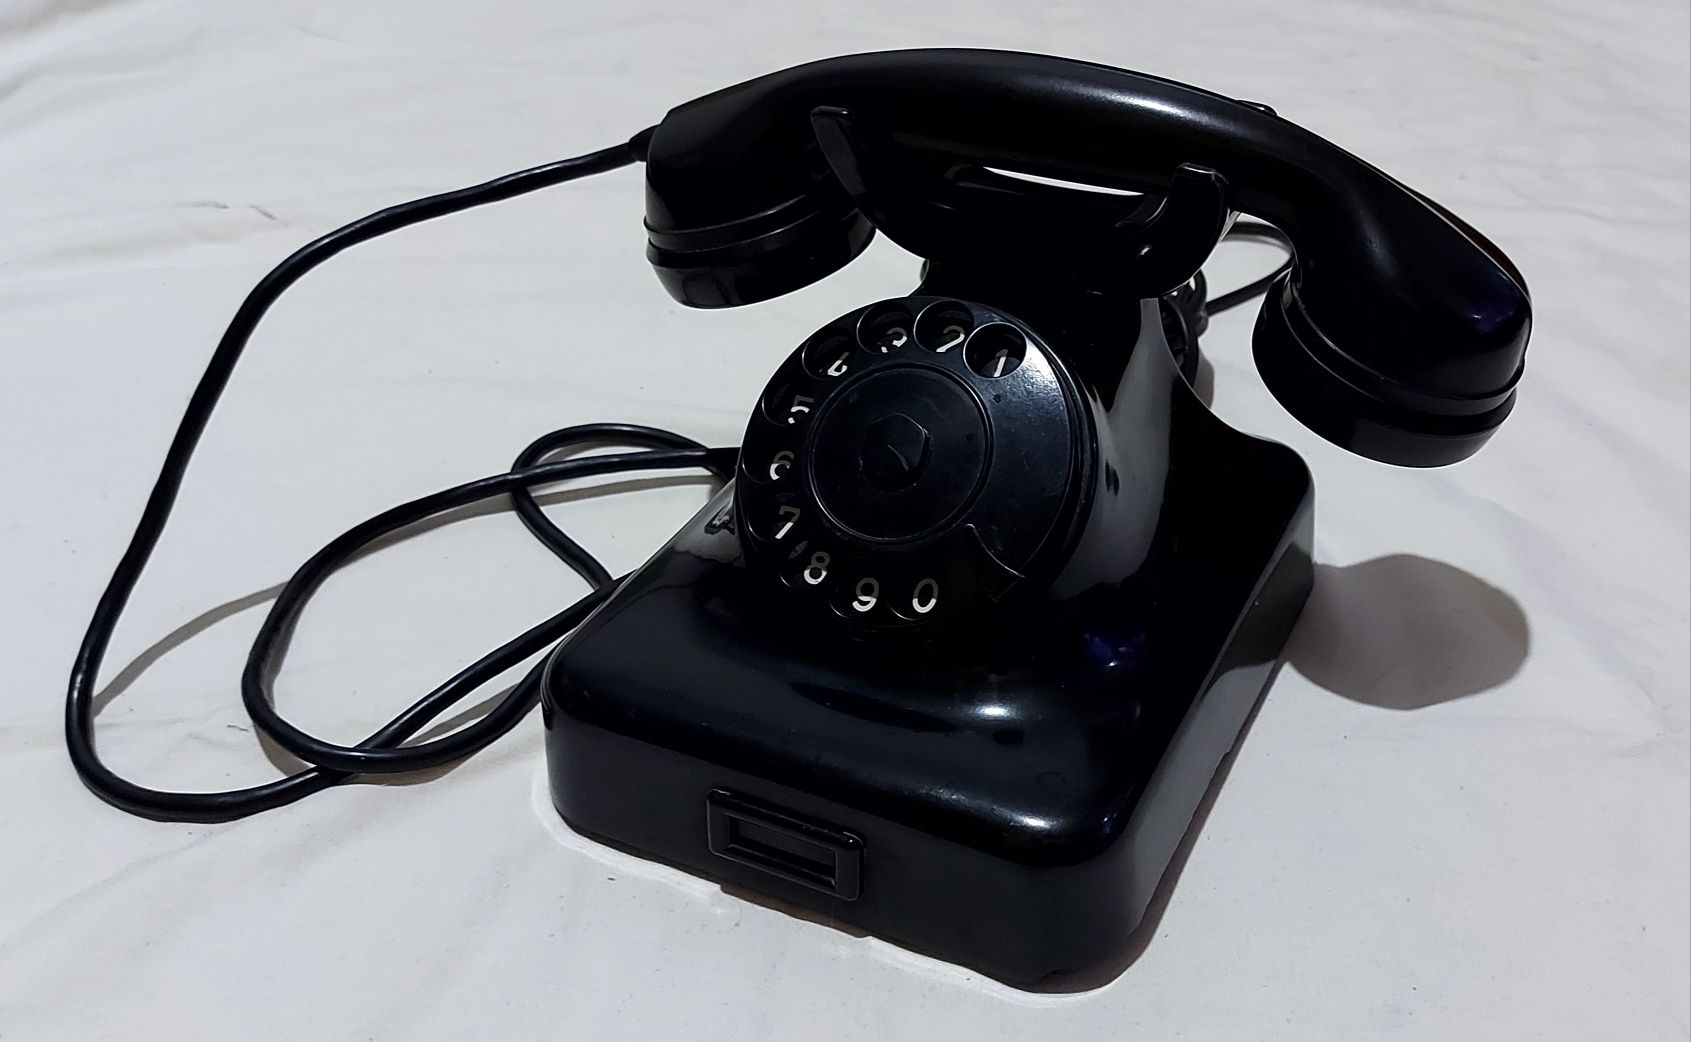 Telefon din bachelita W48 - 1952